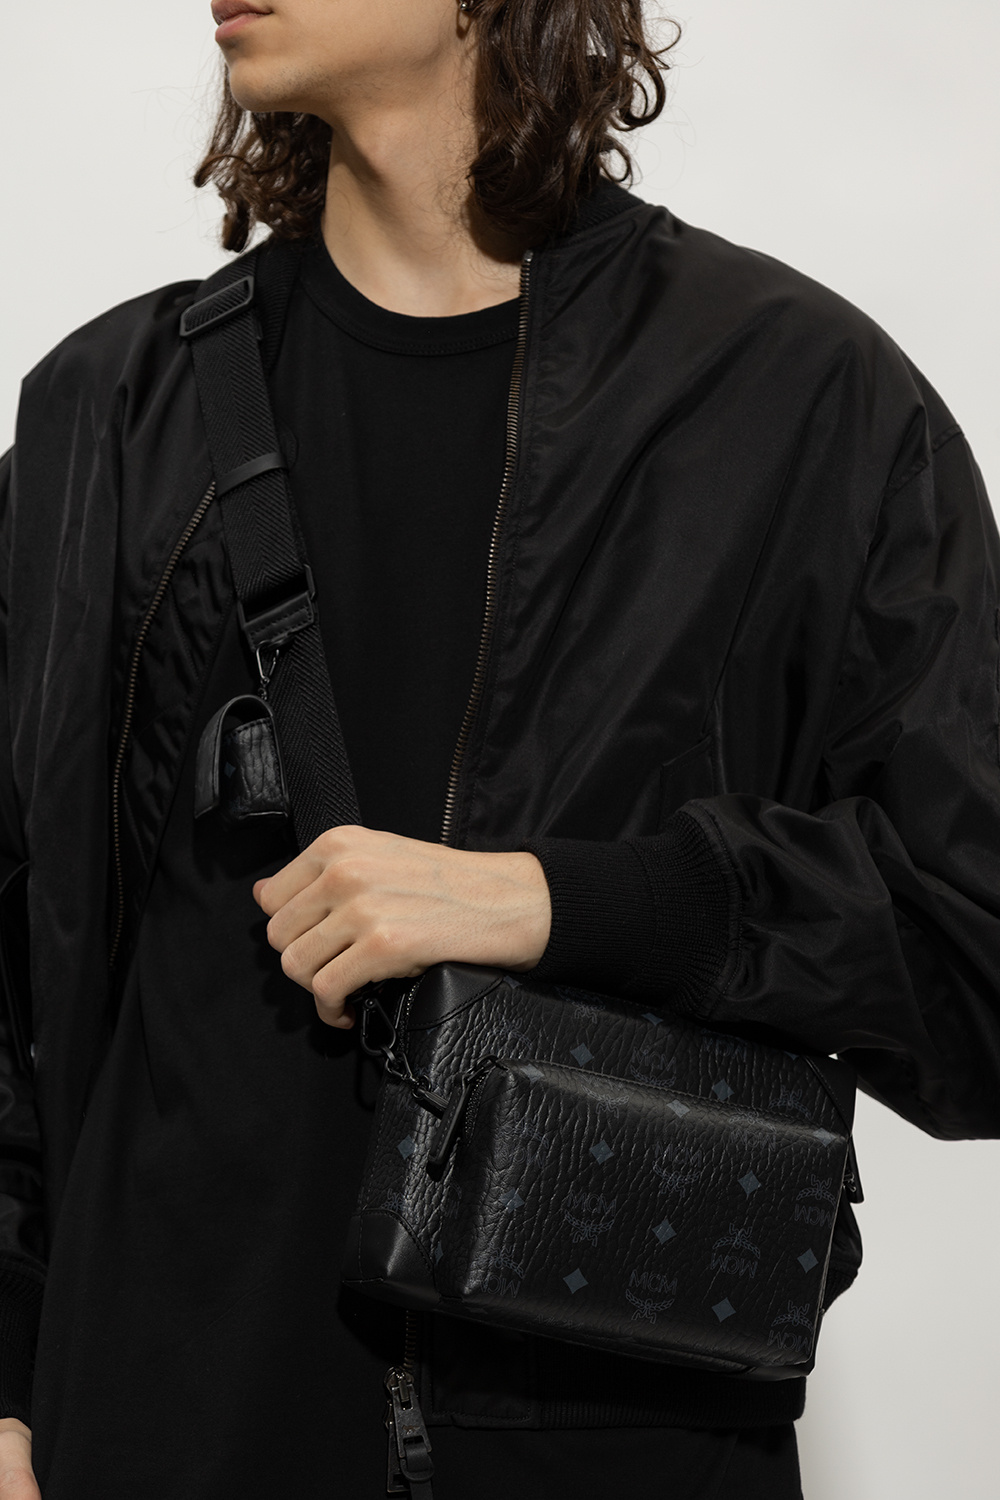 Mcm Klassik Small Messenger Bag in Black